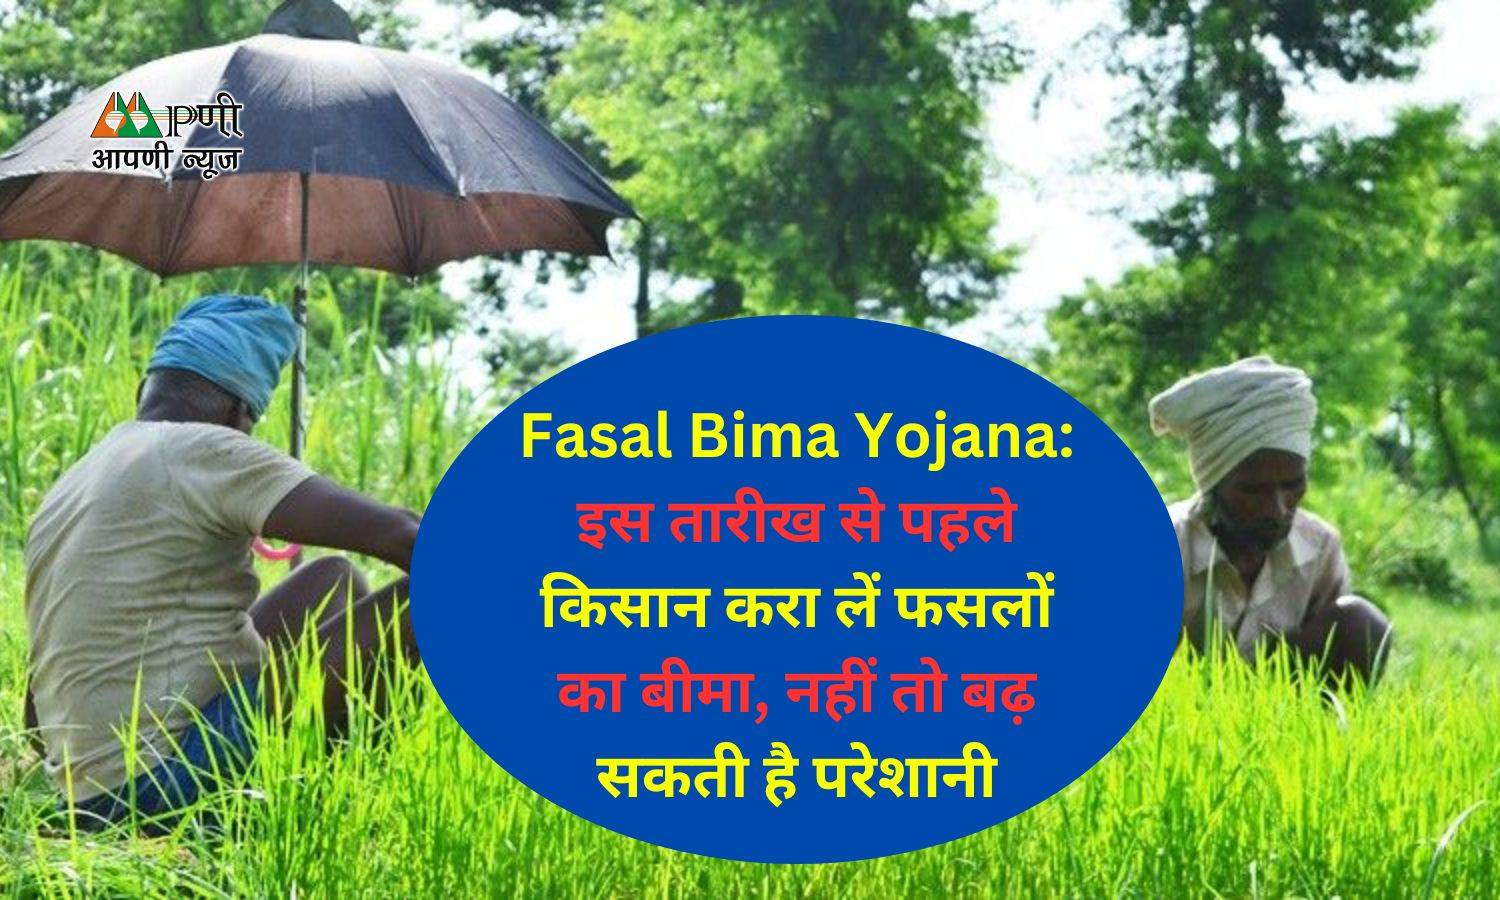 Fasal Bima Yojana: इस तारीख से पहले किसान करा लें फसलों का बीमा, नहीं तो बढ़ सकती है परेशानी